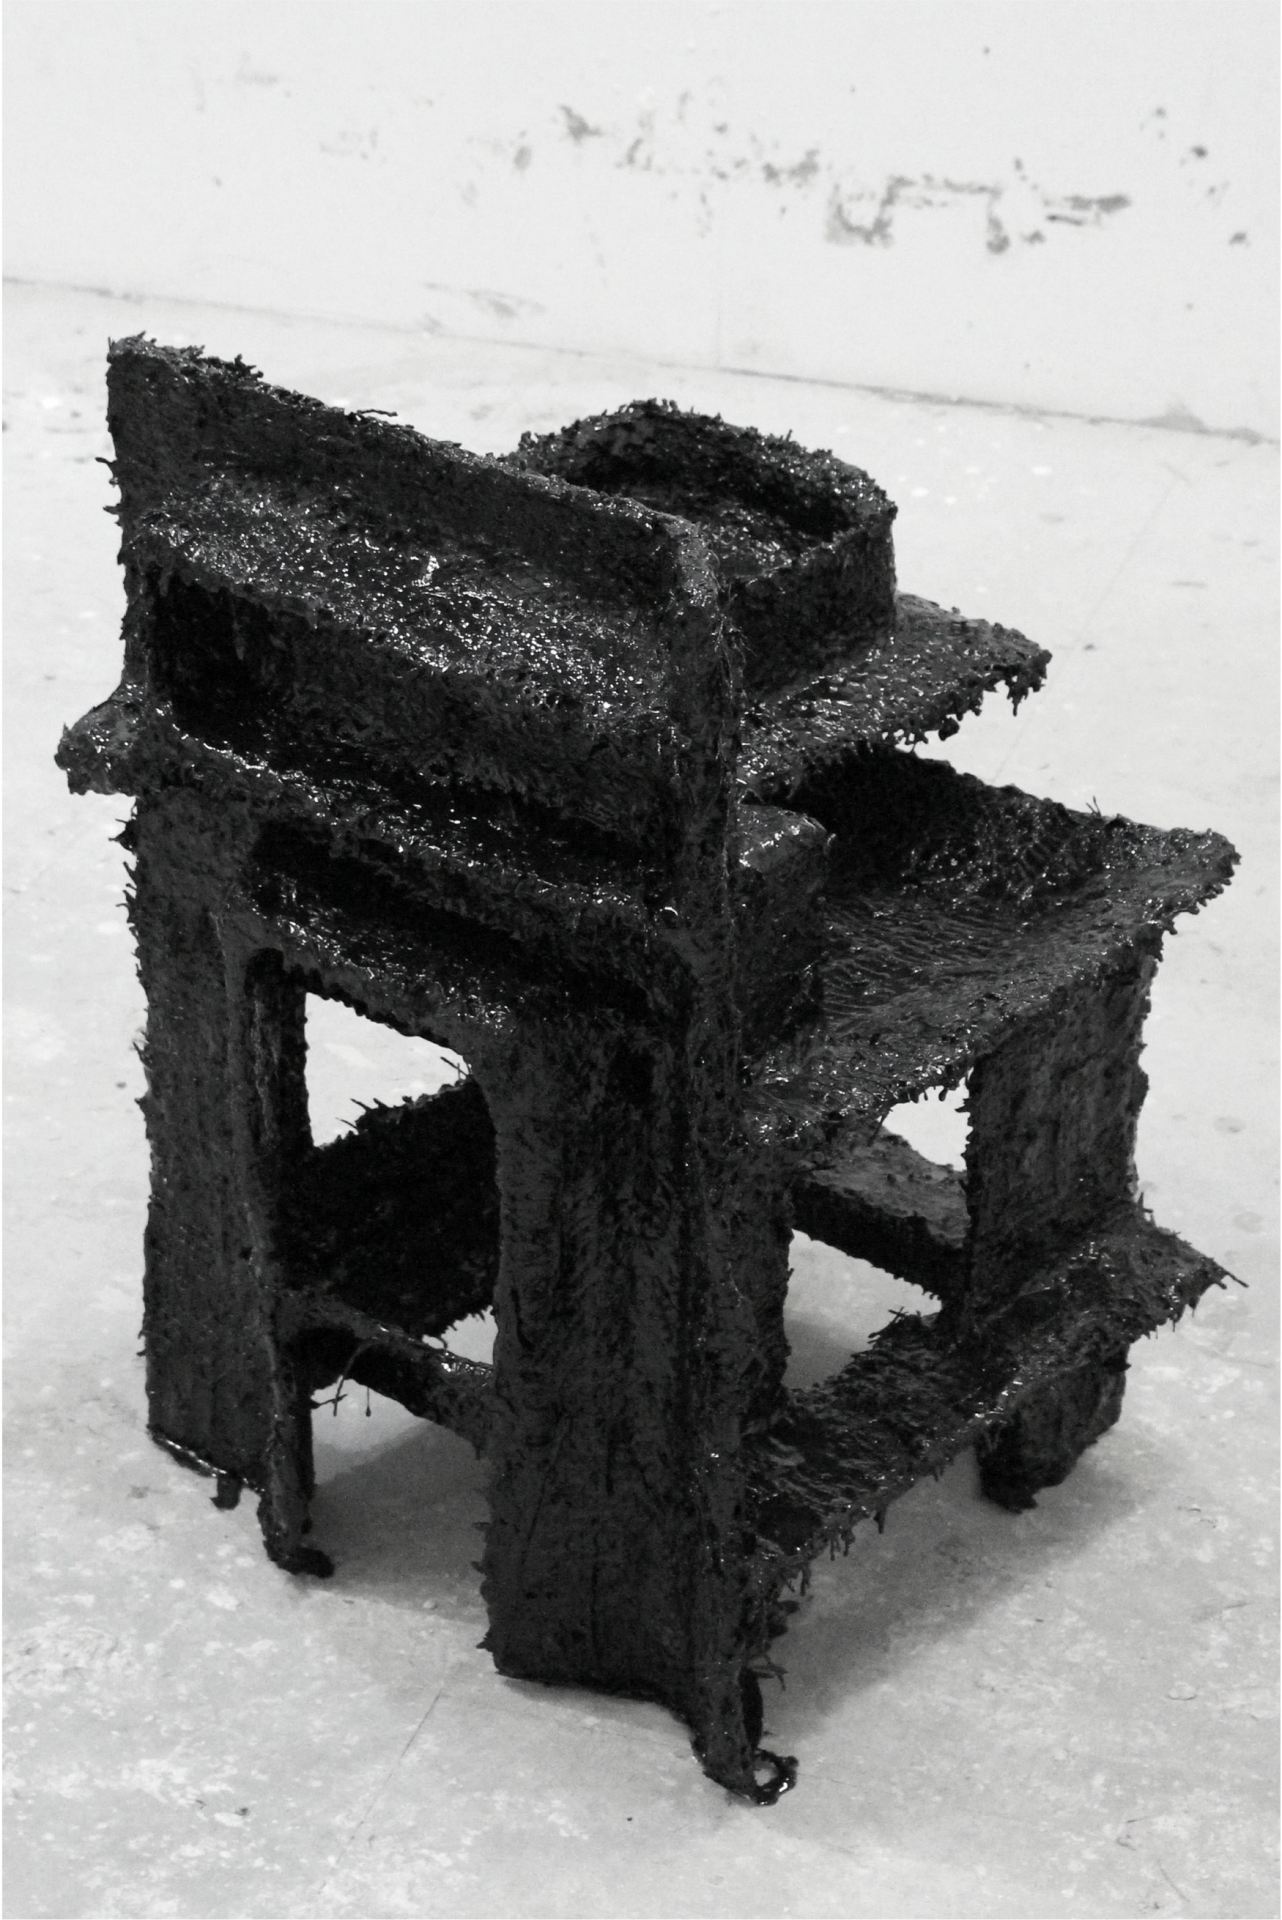 An abstract, black sculpture.